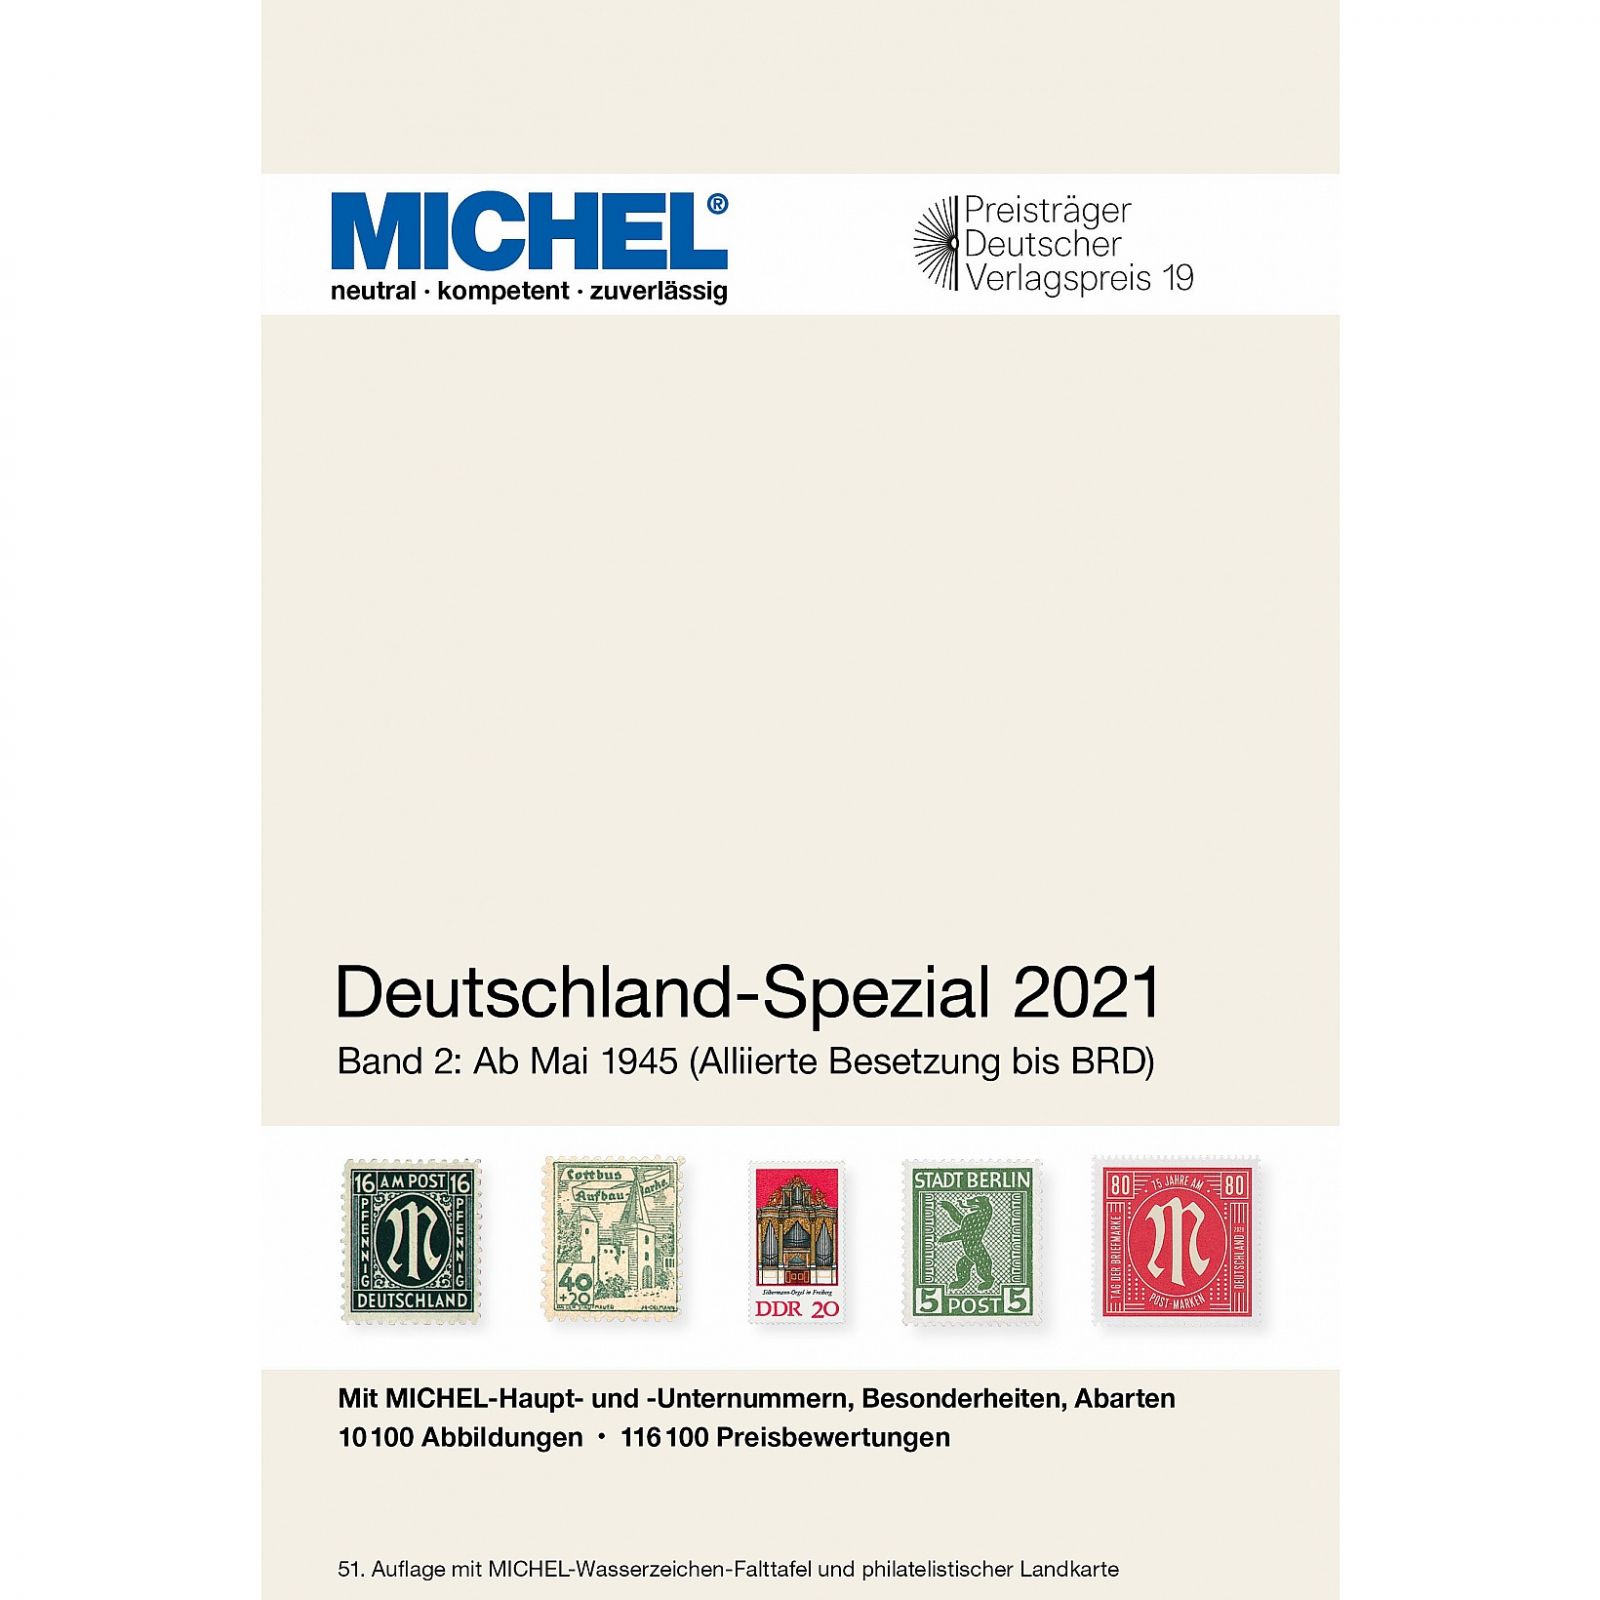 Michel 2021 - Německo speciál po r. 1945 (díl. 2)